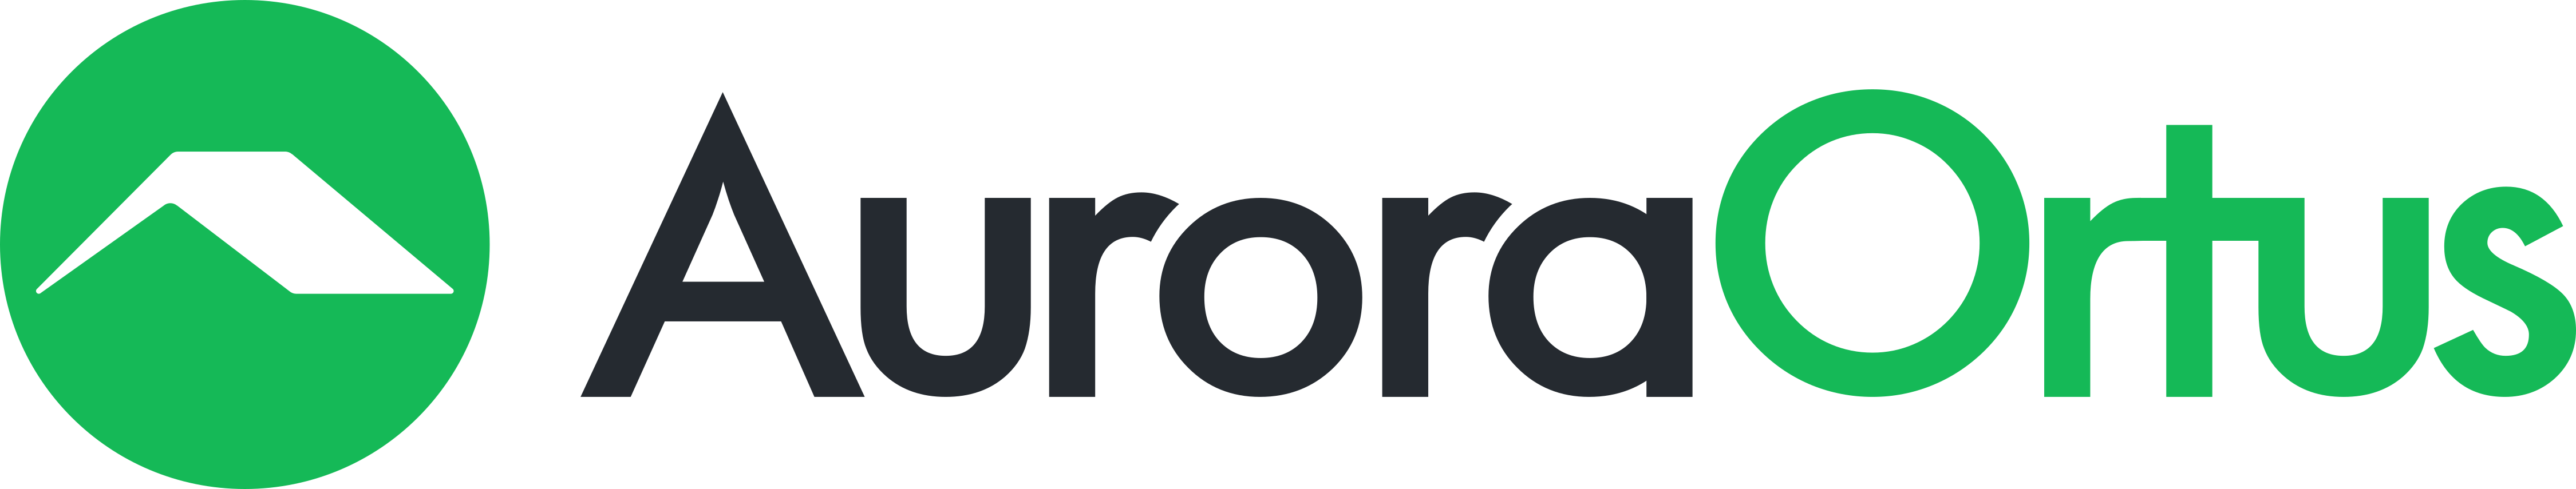 Aurora Ortus Logo - Propertunities